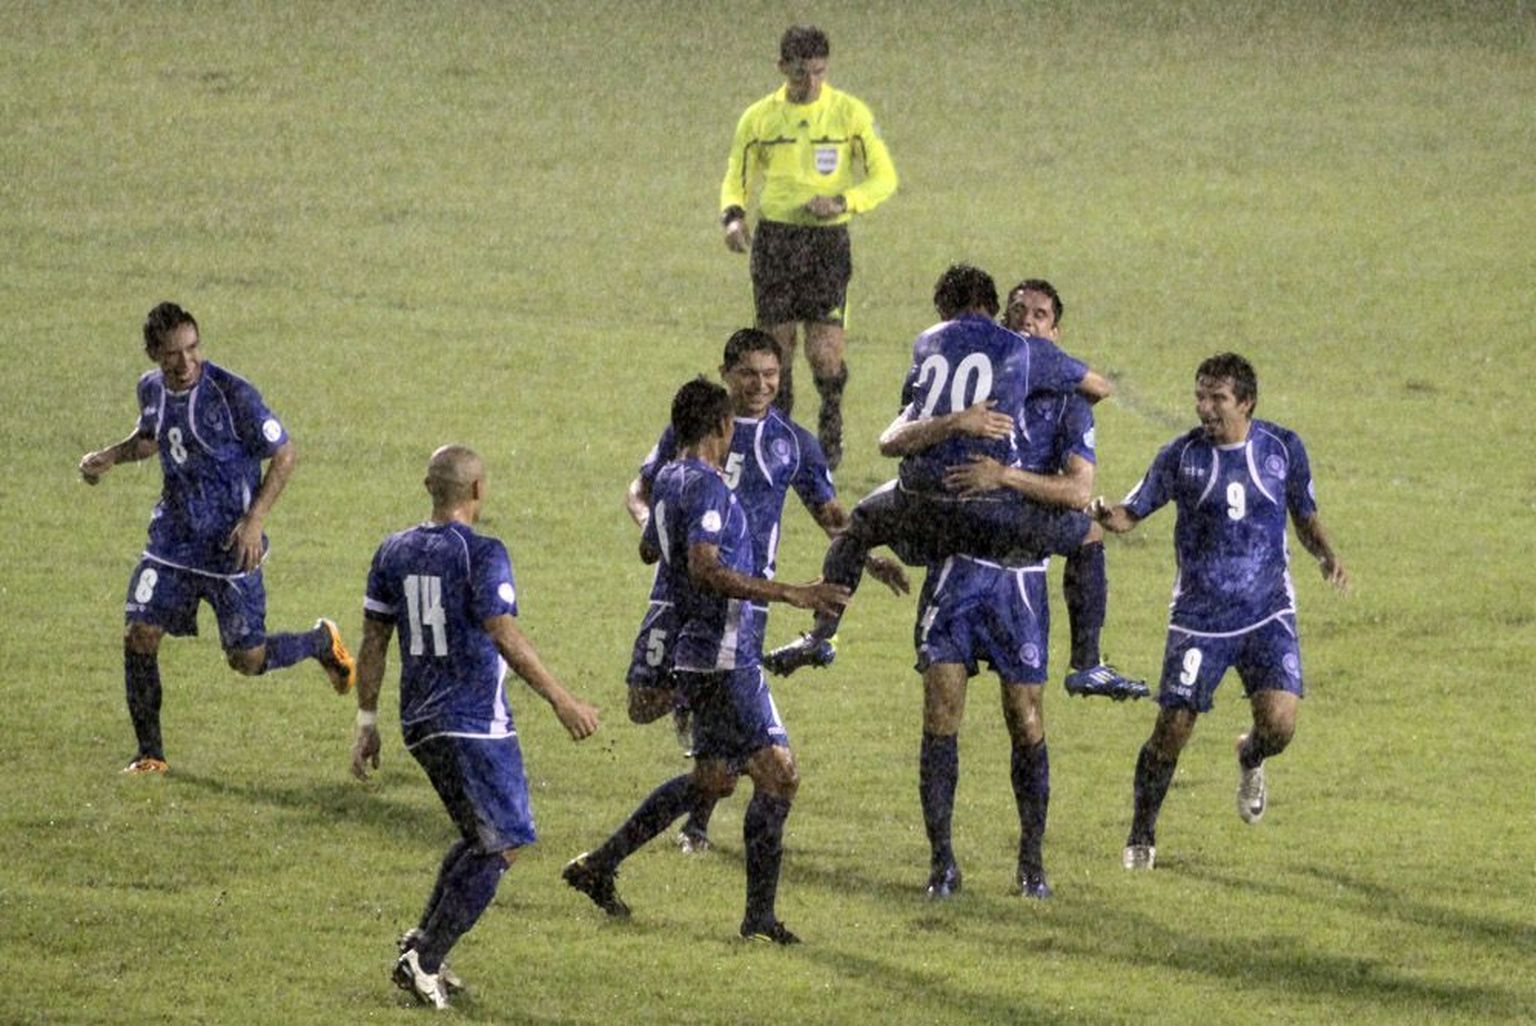 El Salvadori jalgpallikoondis sai 2014. aasta MM-kvalifikatsiooni 2. voorus oma alagrupis kindla esikoha, alistades kõik vastased    ning jõudis järgmisesse ringi.